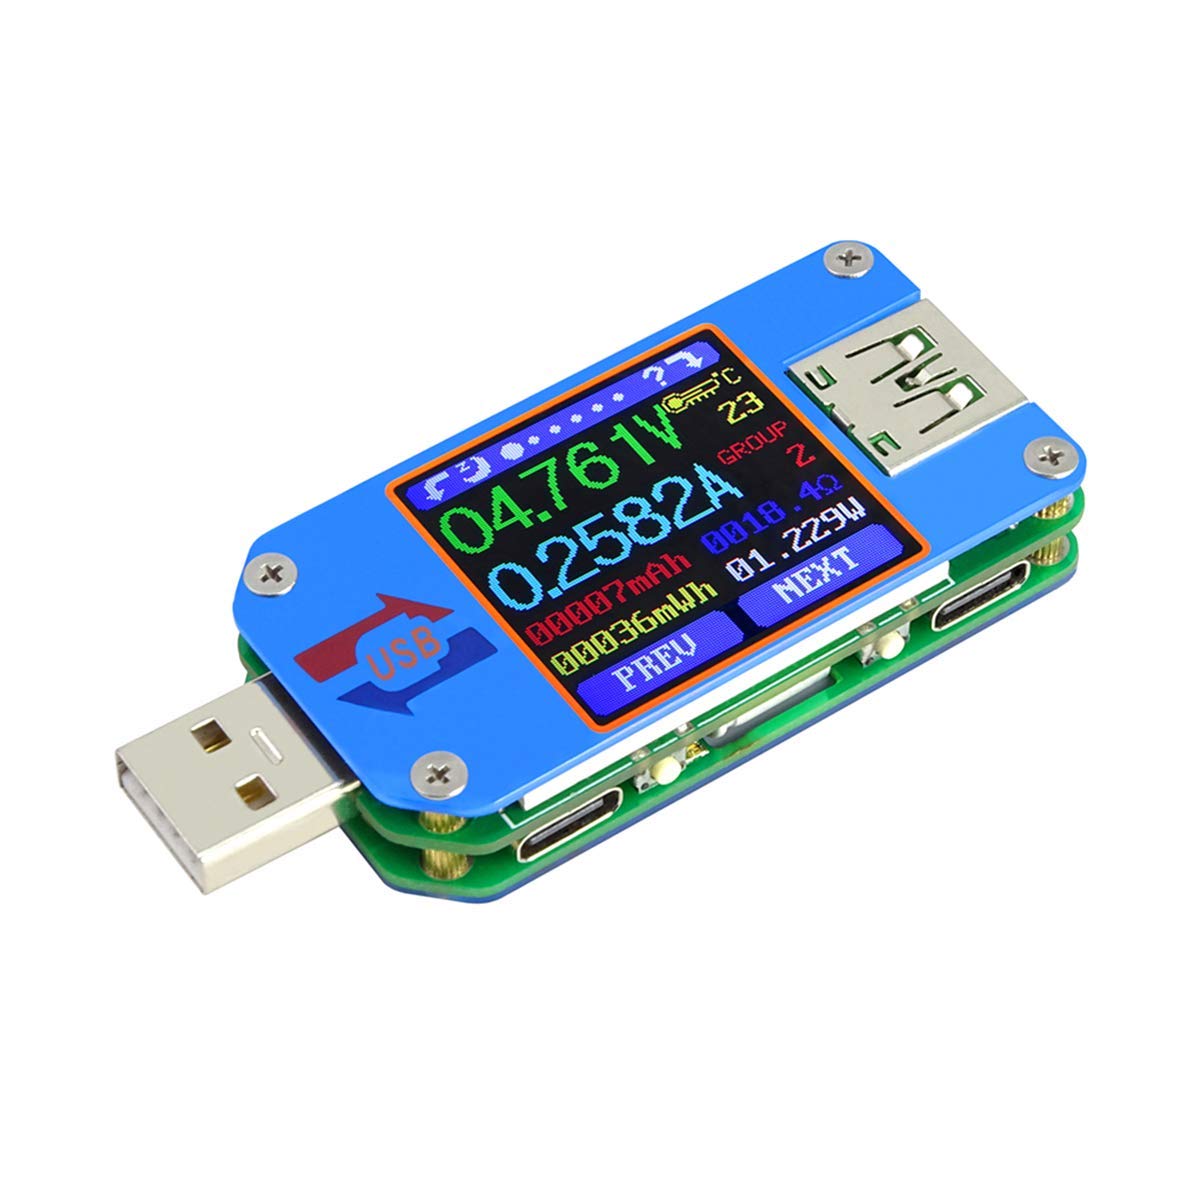 UM25C Tester, Bluetooth USB Meter, Current